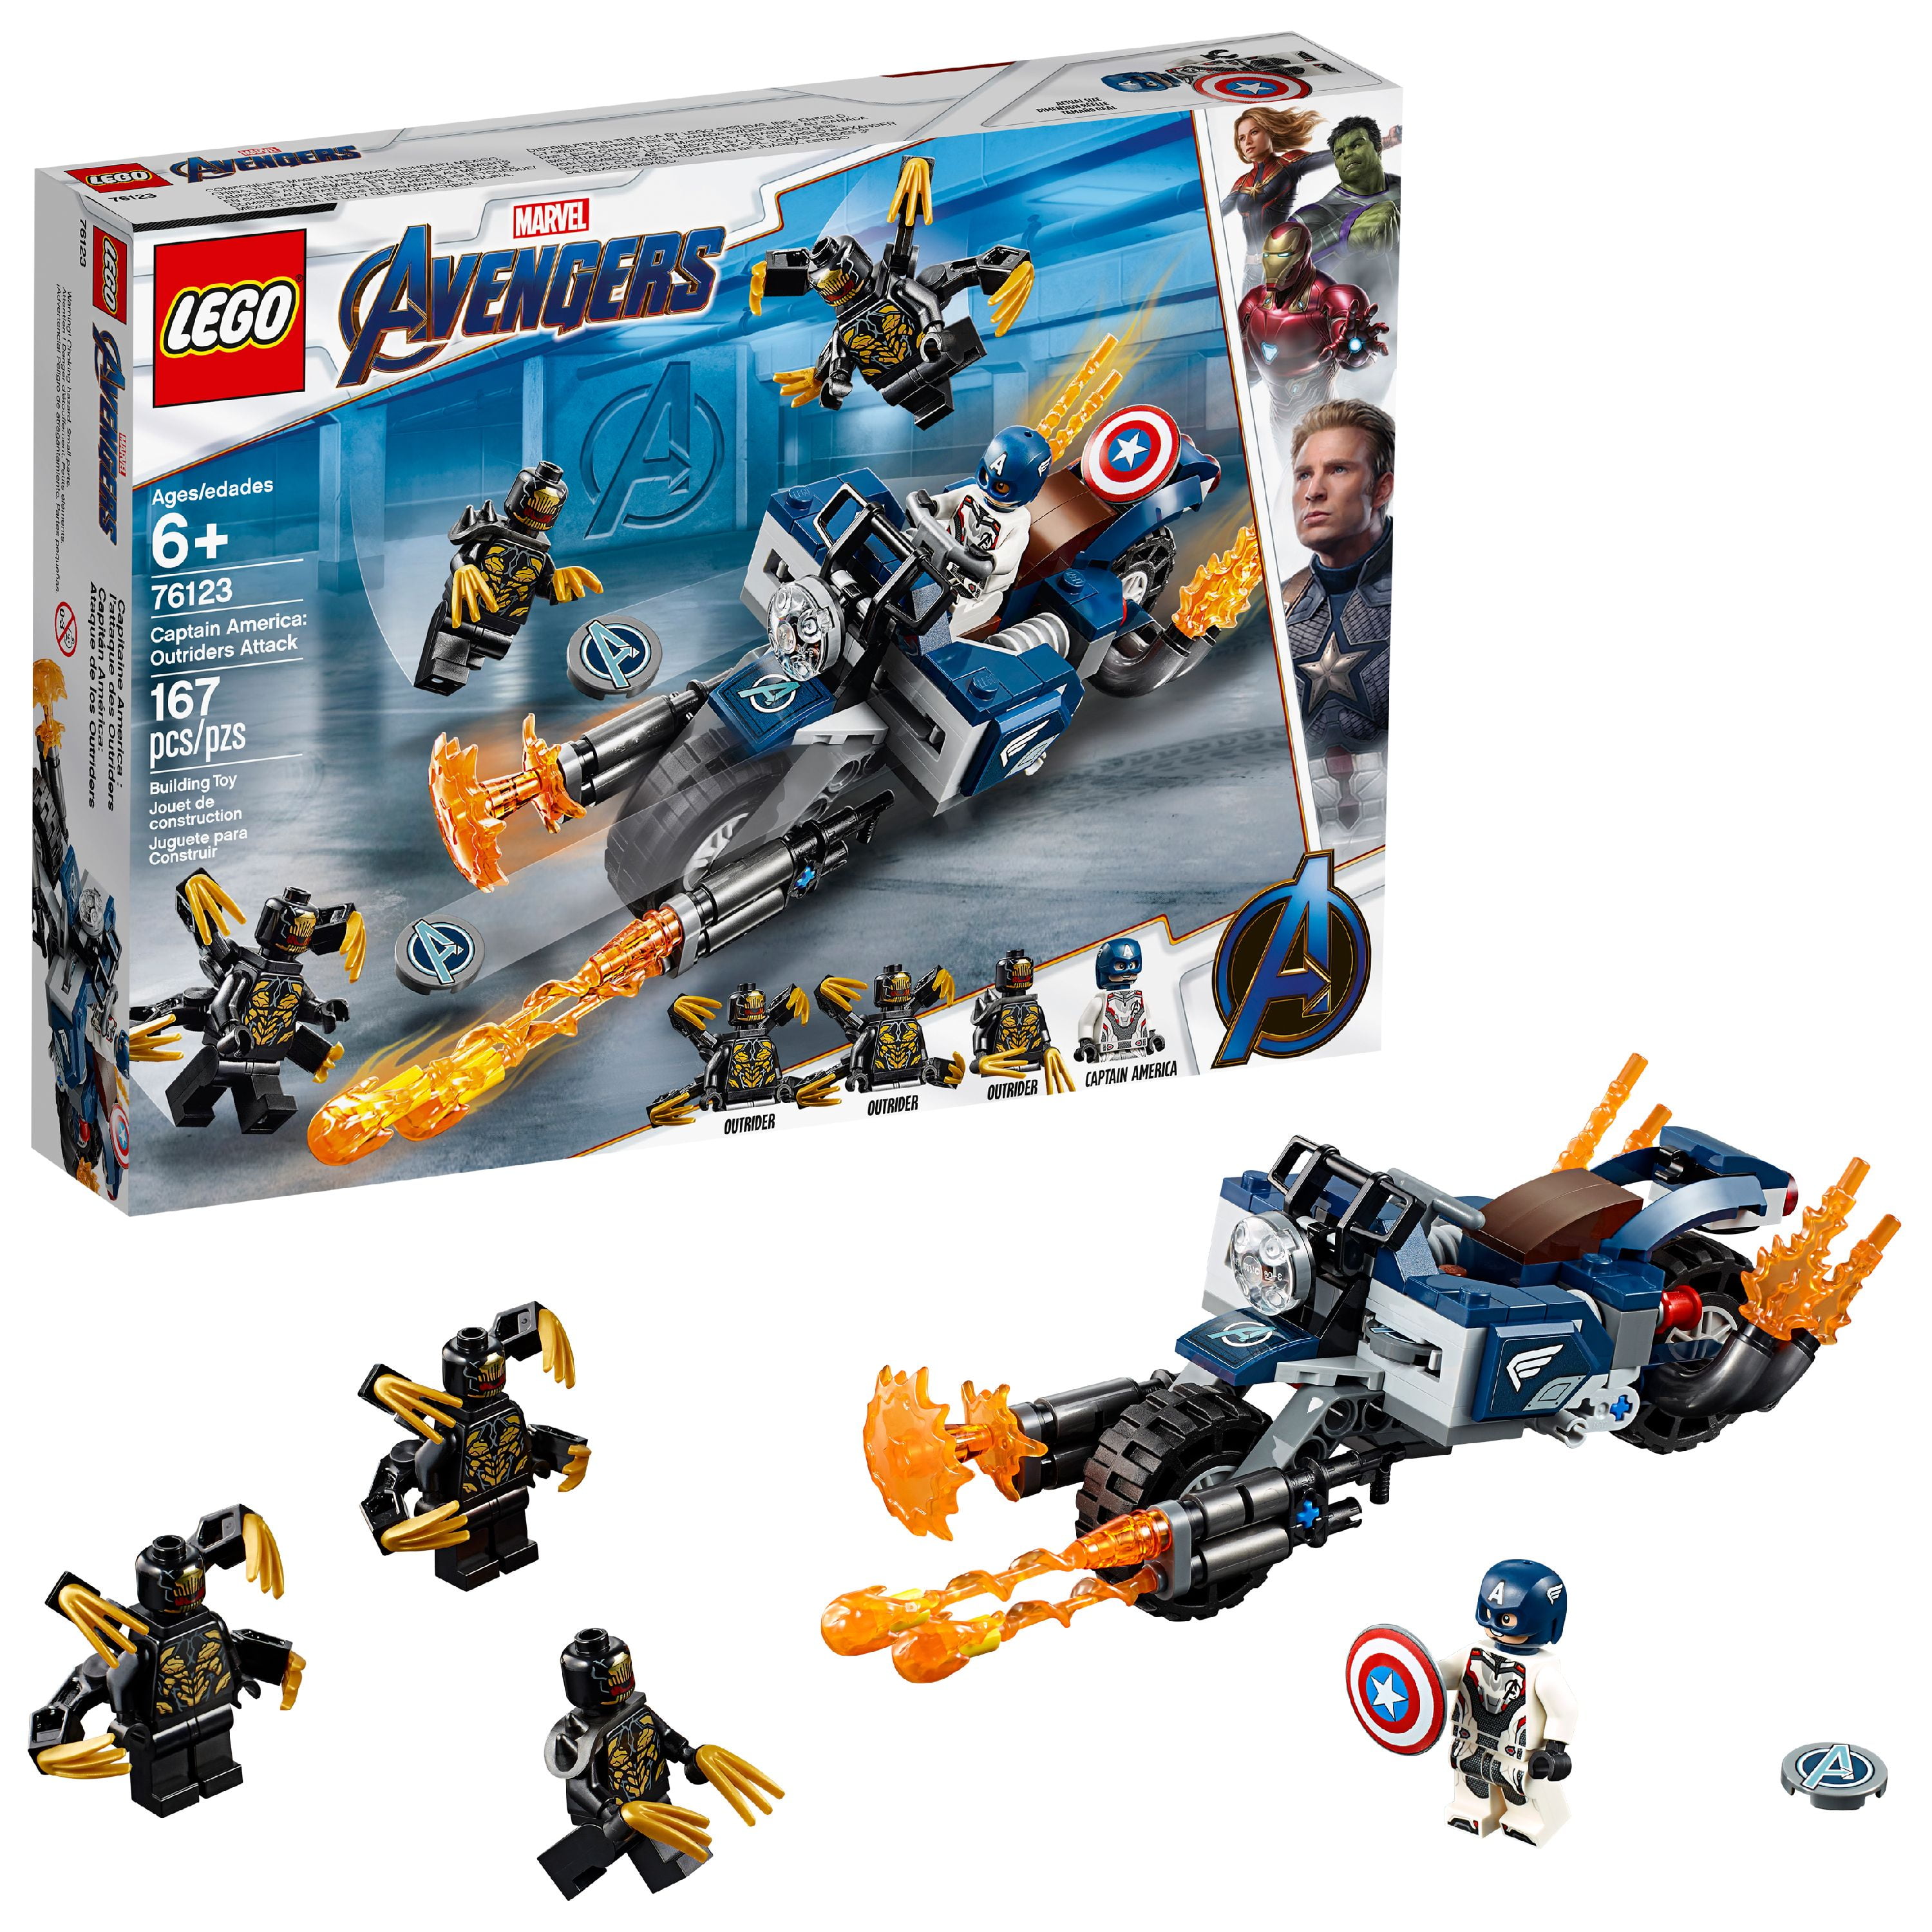 Thor Marvel Super Heroes New Genuine Lego sh623 Spilt 76142 